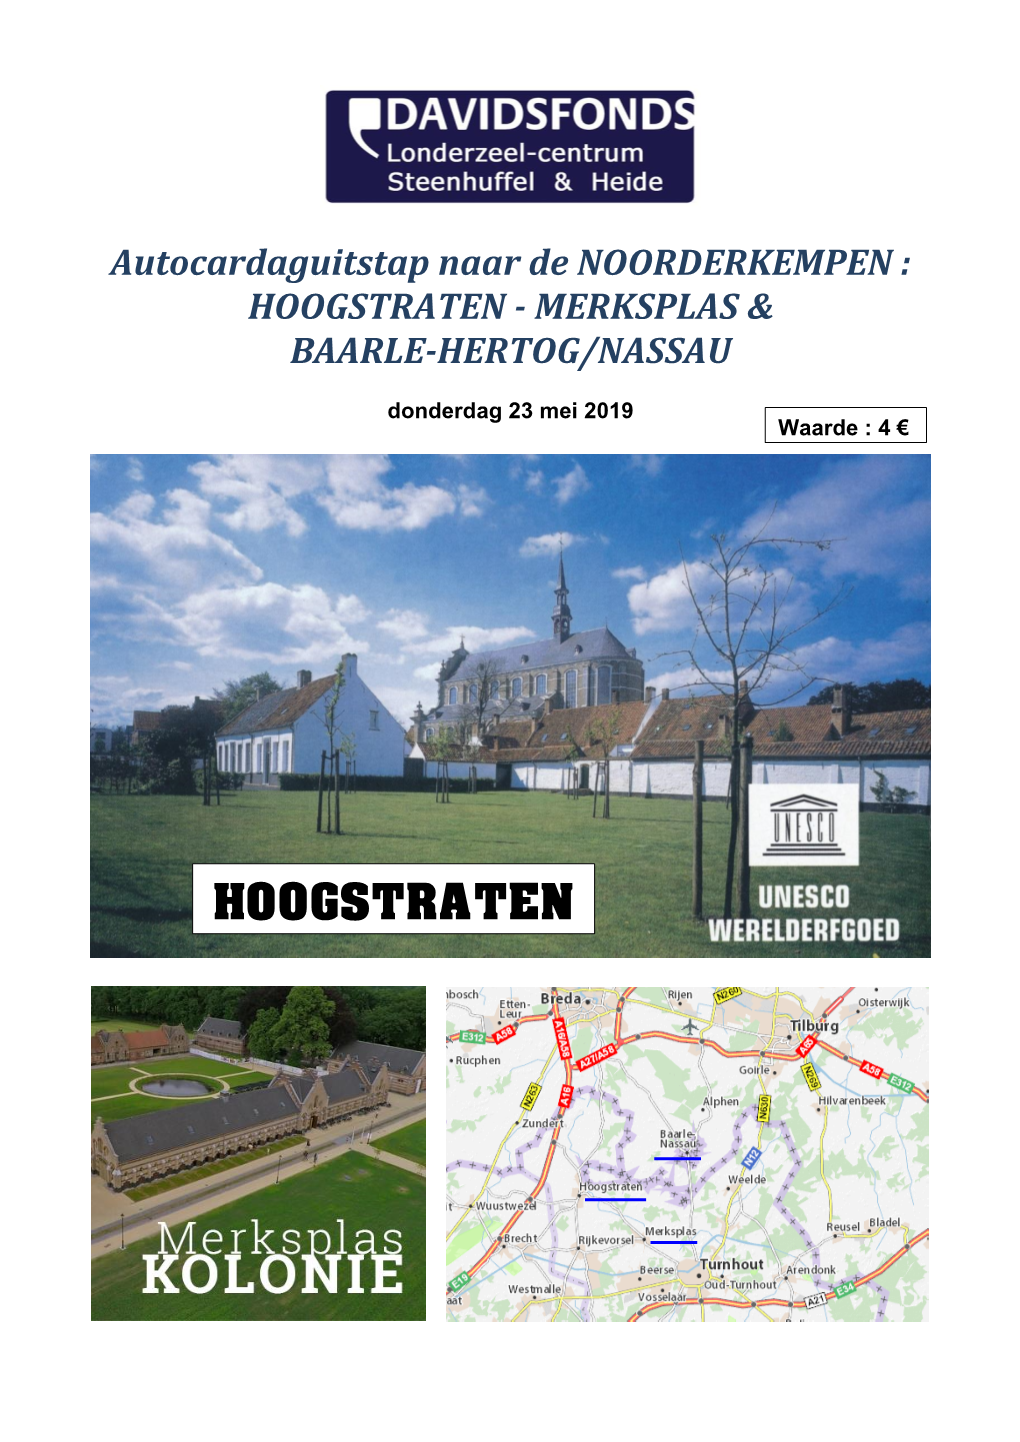 Hoogstraten - Merksplas & Baarle-Hertog/Nassau